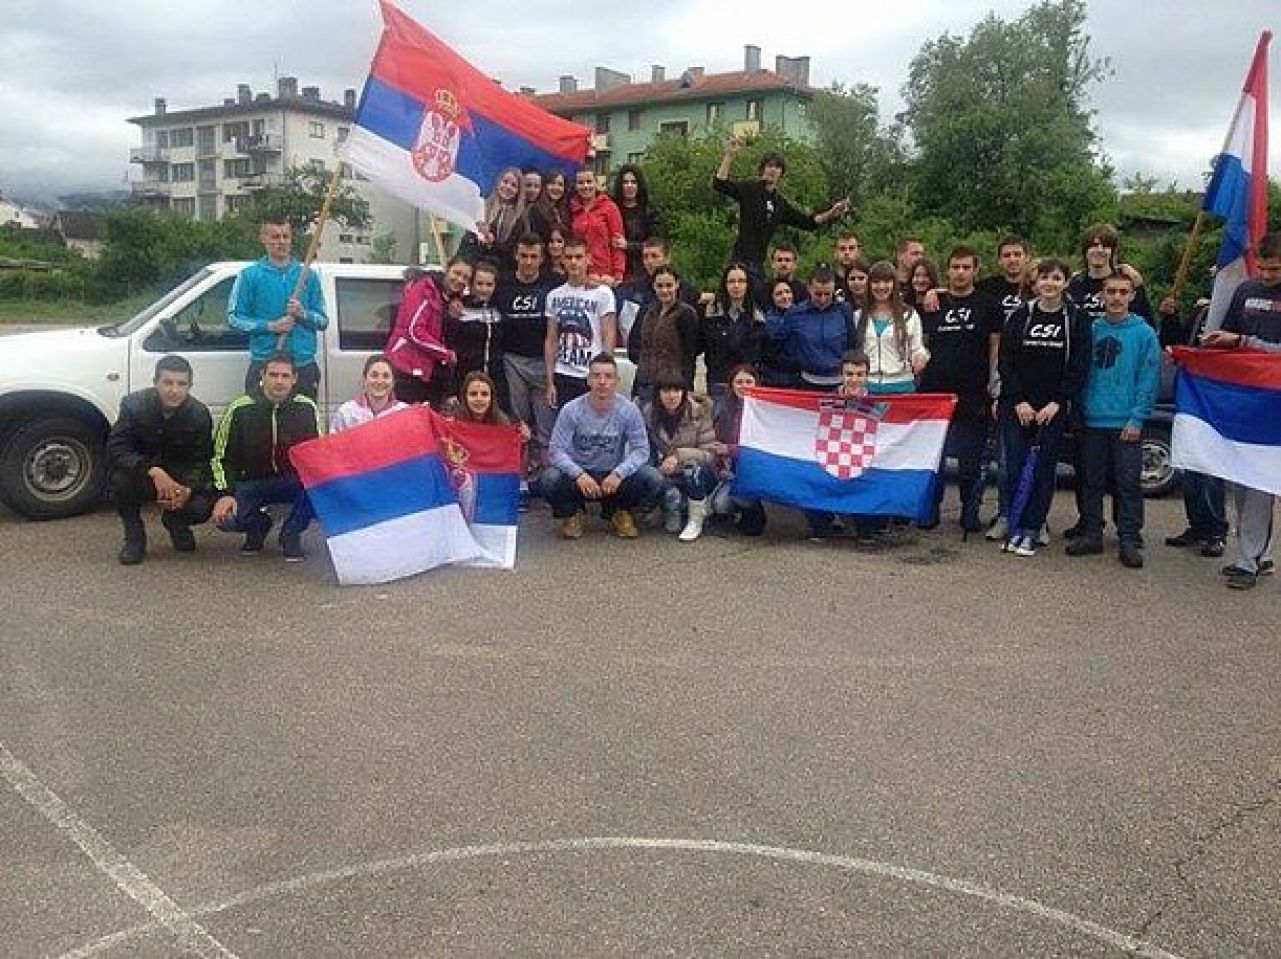 O maturantima iz Drvara koji su pozirali sa zastavama Hrvatske i Srbije priča cijela regija